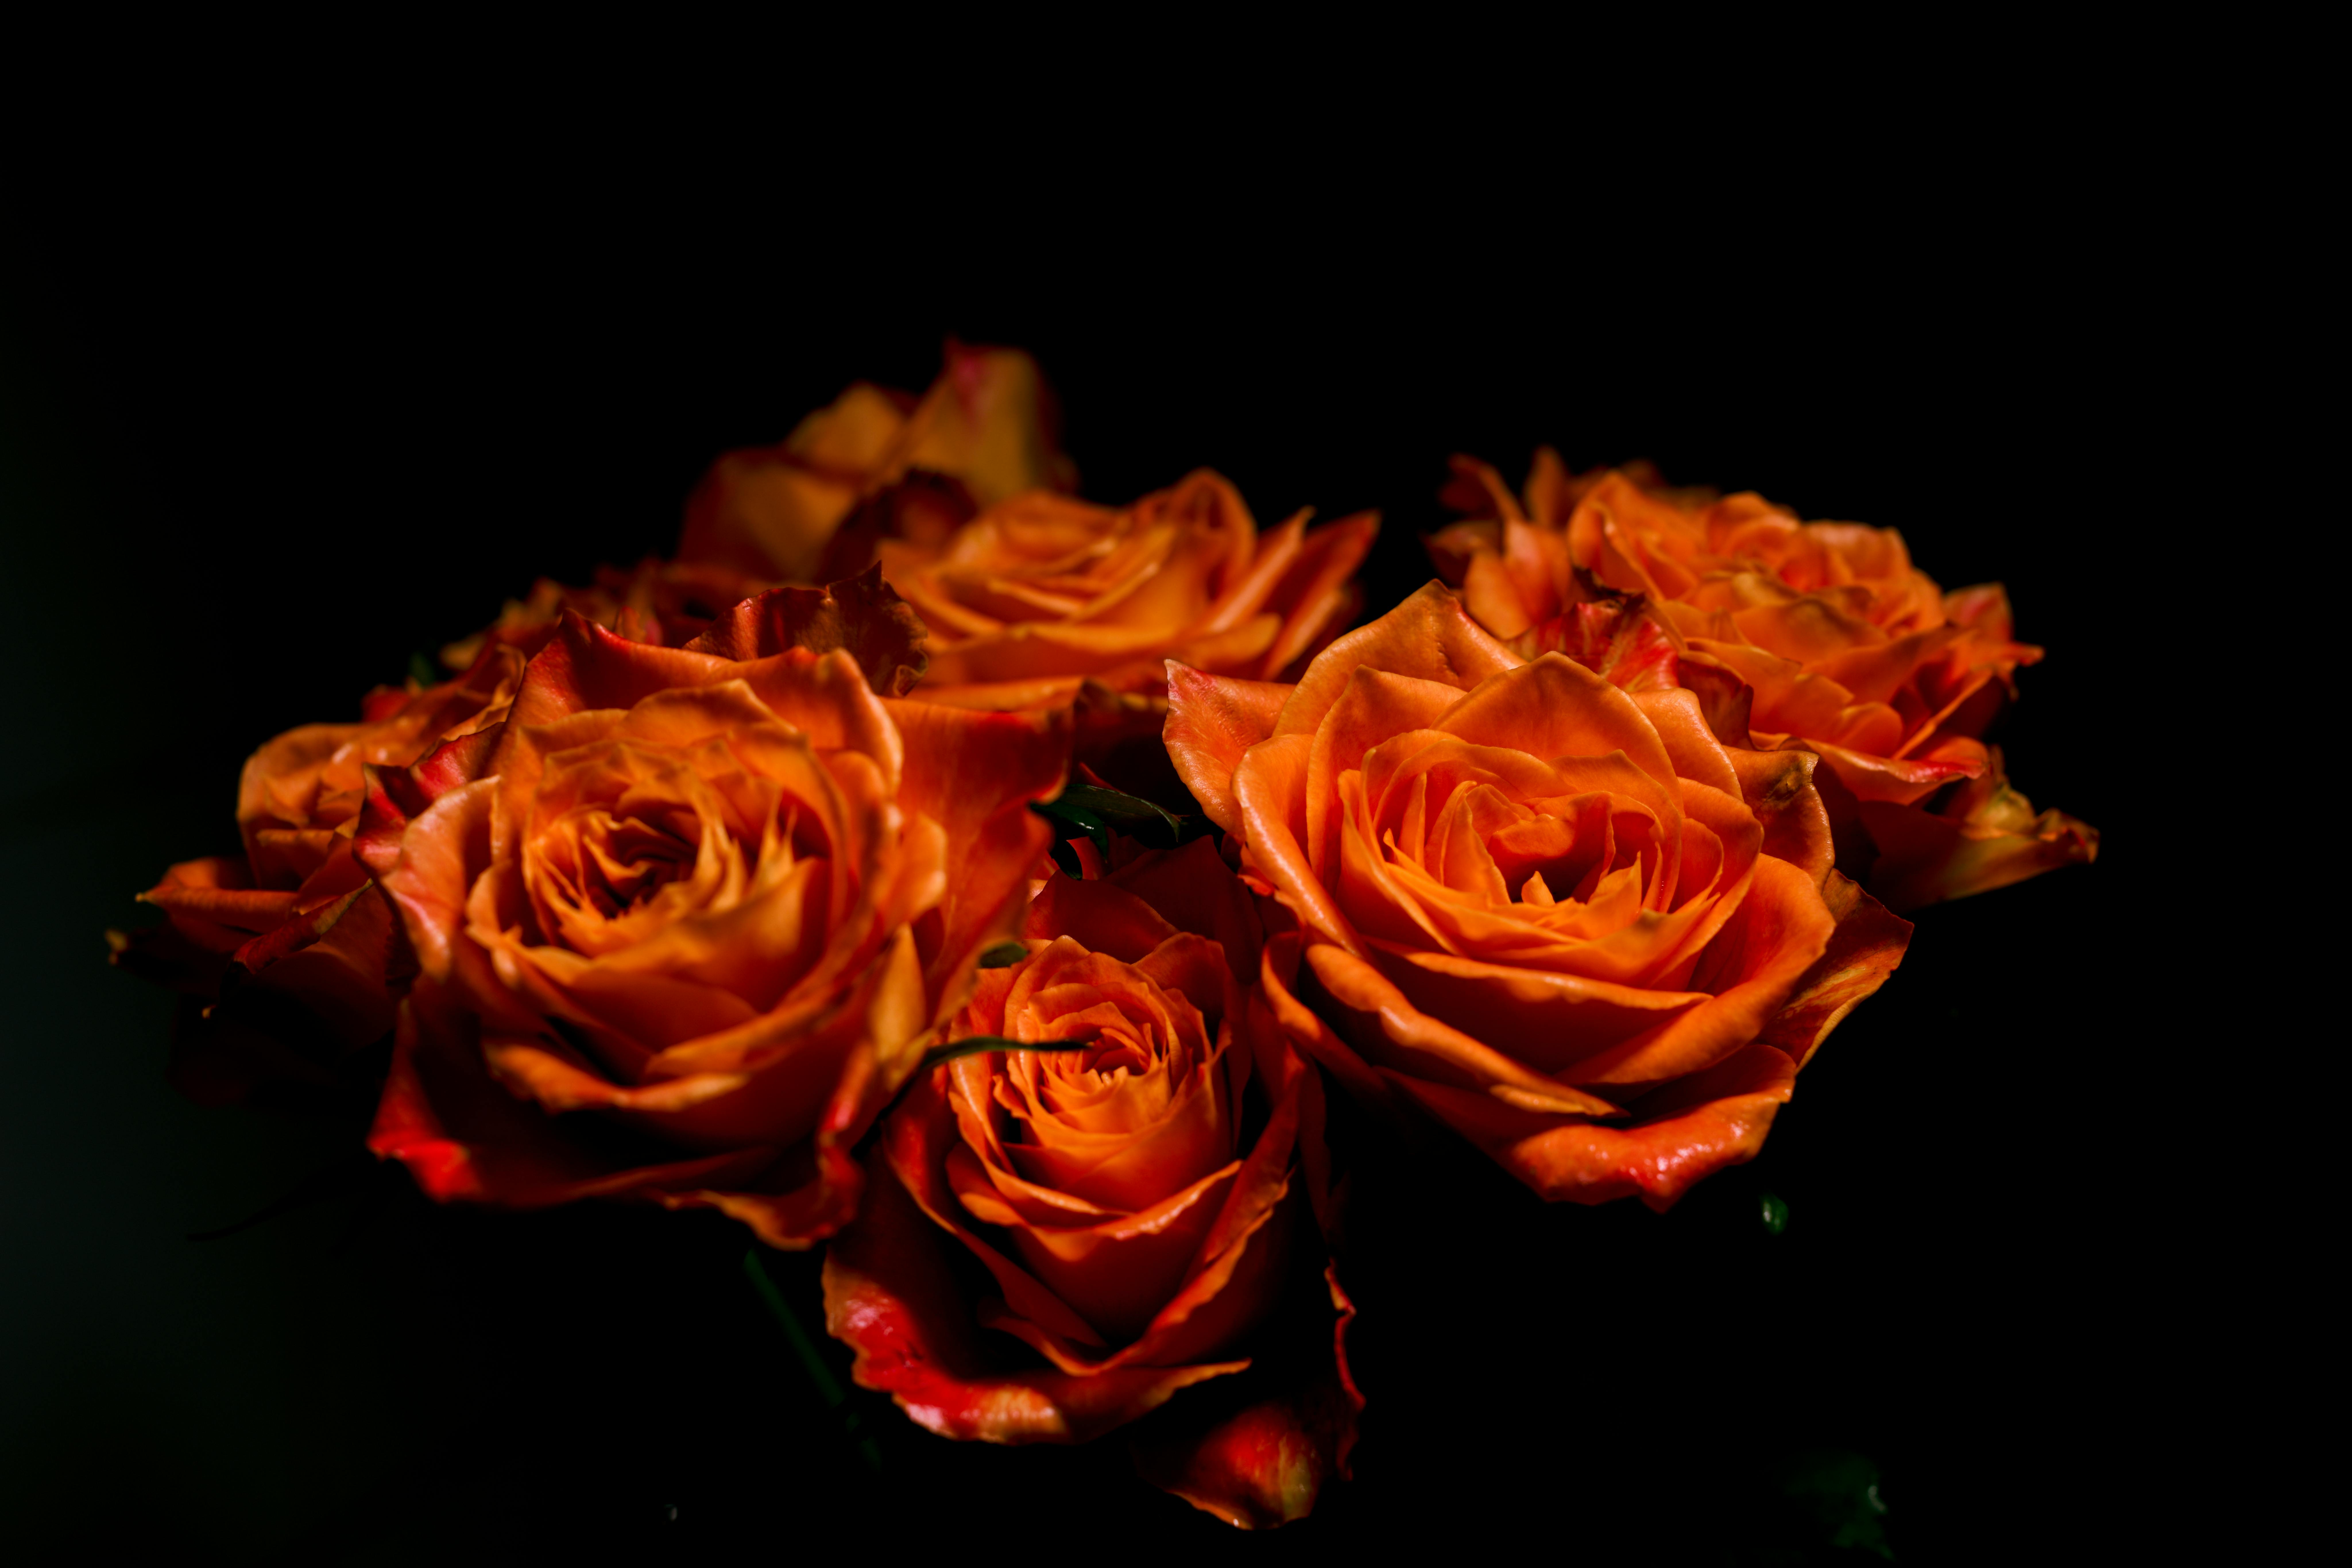 Với hình ảnh hoa hồng cam nở rộ, bạn sẽ bị lôi cuốn vào cảm giác lộng lẫy và đầy quyến rũ. Với màu cam chói lọi, đây là một sắc hoa khiến bạn không thể bỏ qua và đem lại niềm vui trong cuộc sống.